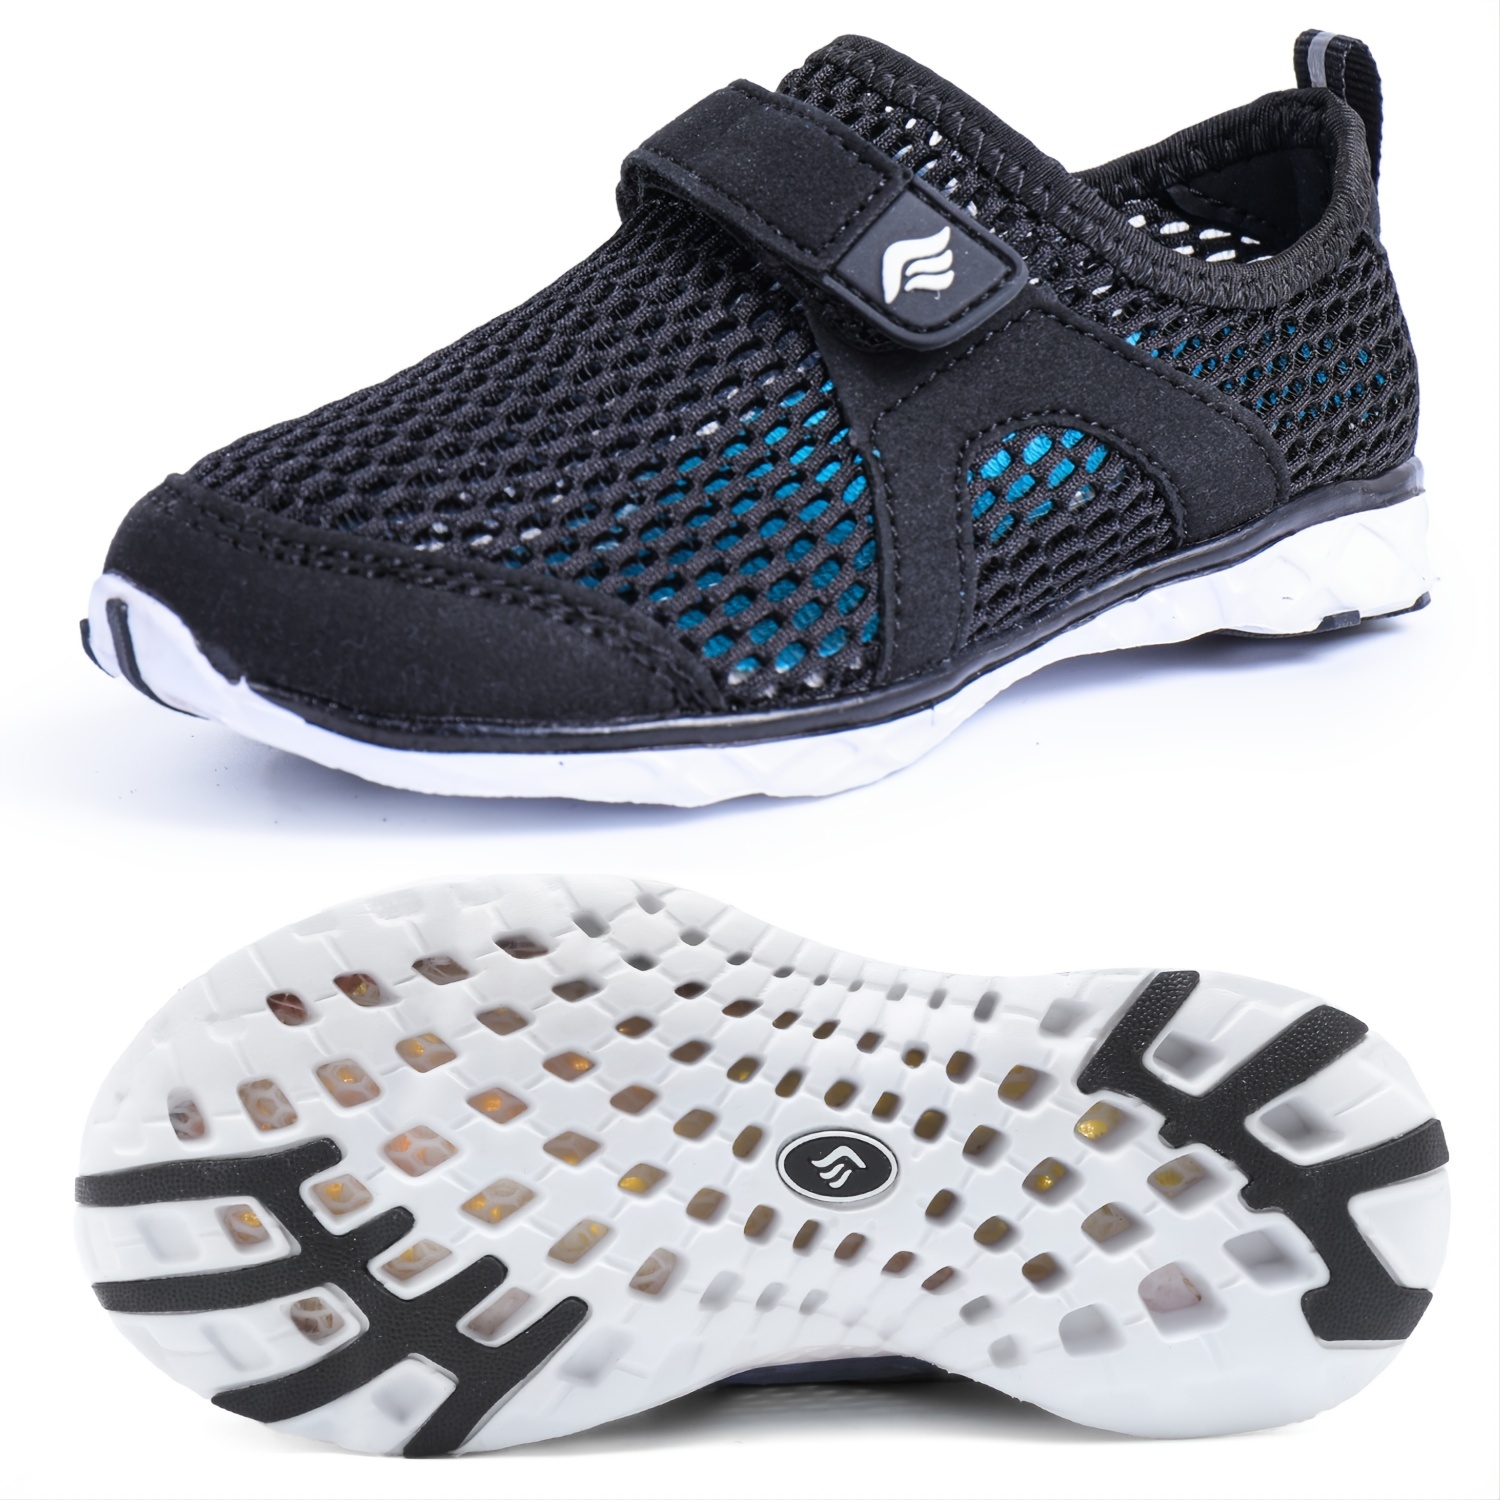 Saguaro-zapatillas de agua para niños y niñas, calzado deportivo ligero de  secado rápido, para niños pequeños y grandes